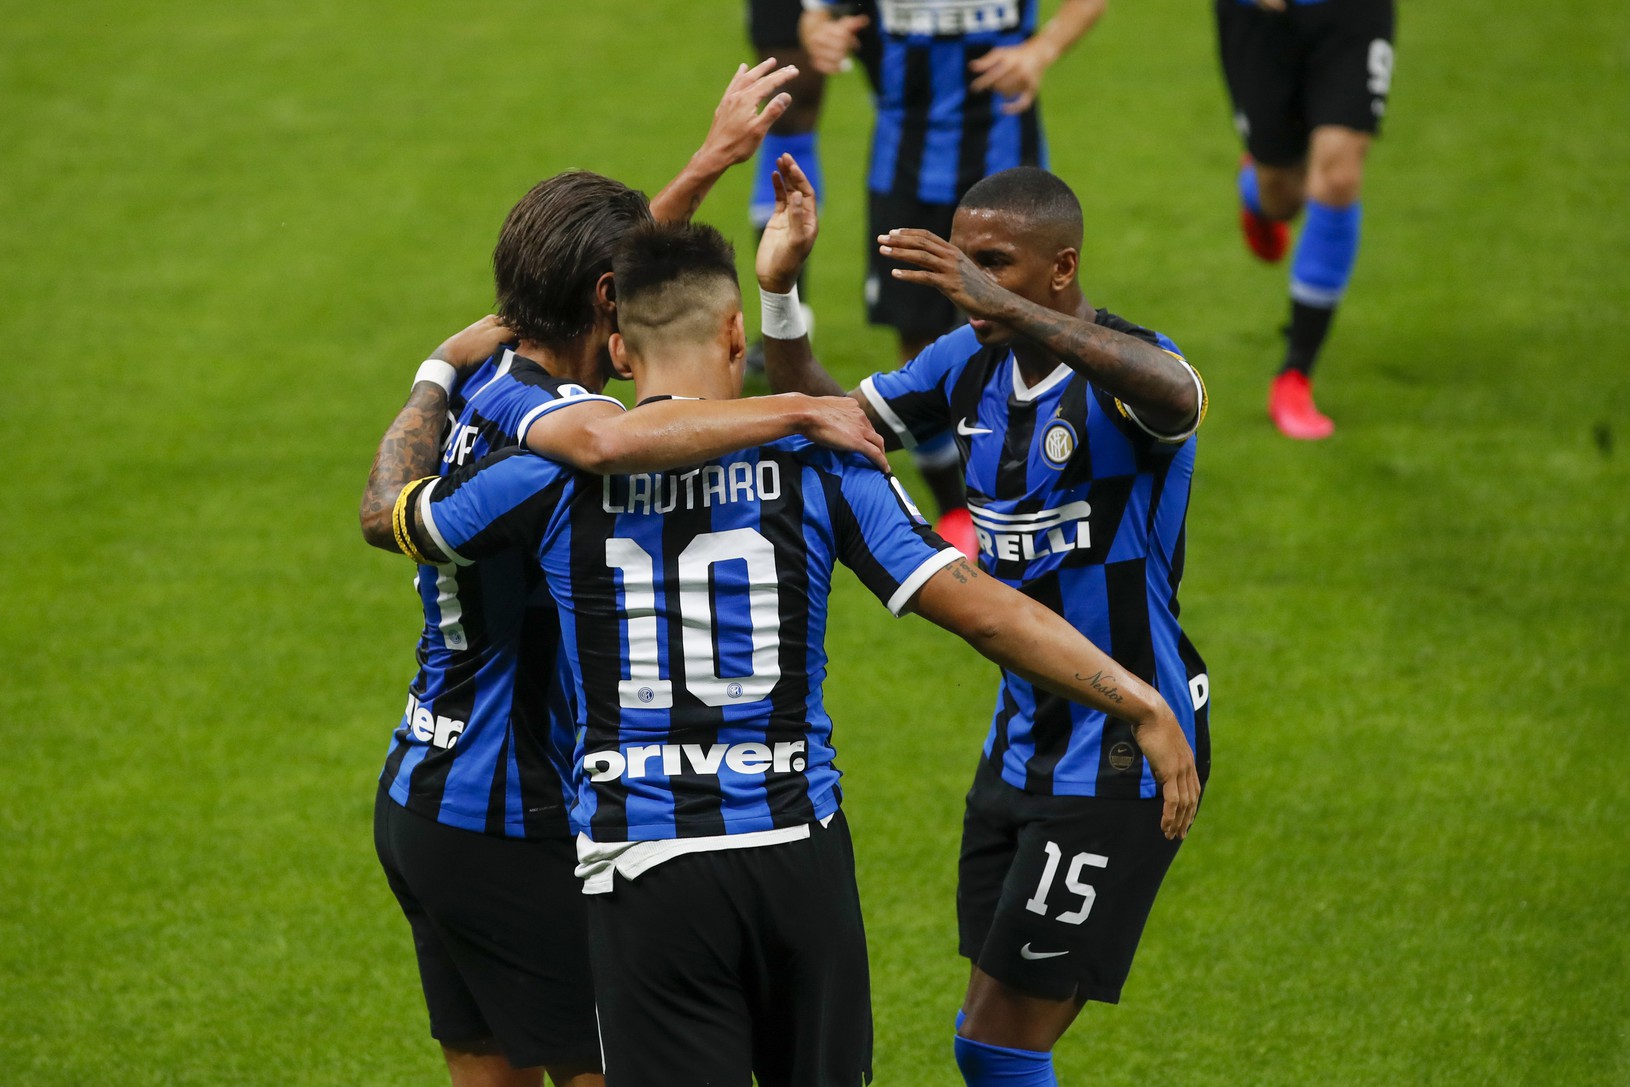 Radosť hráčov Interu Miláno